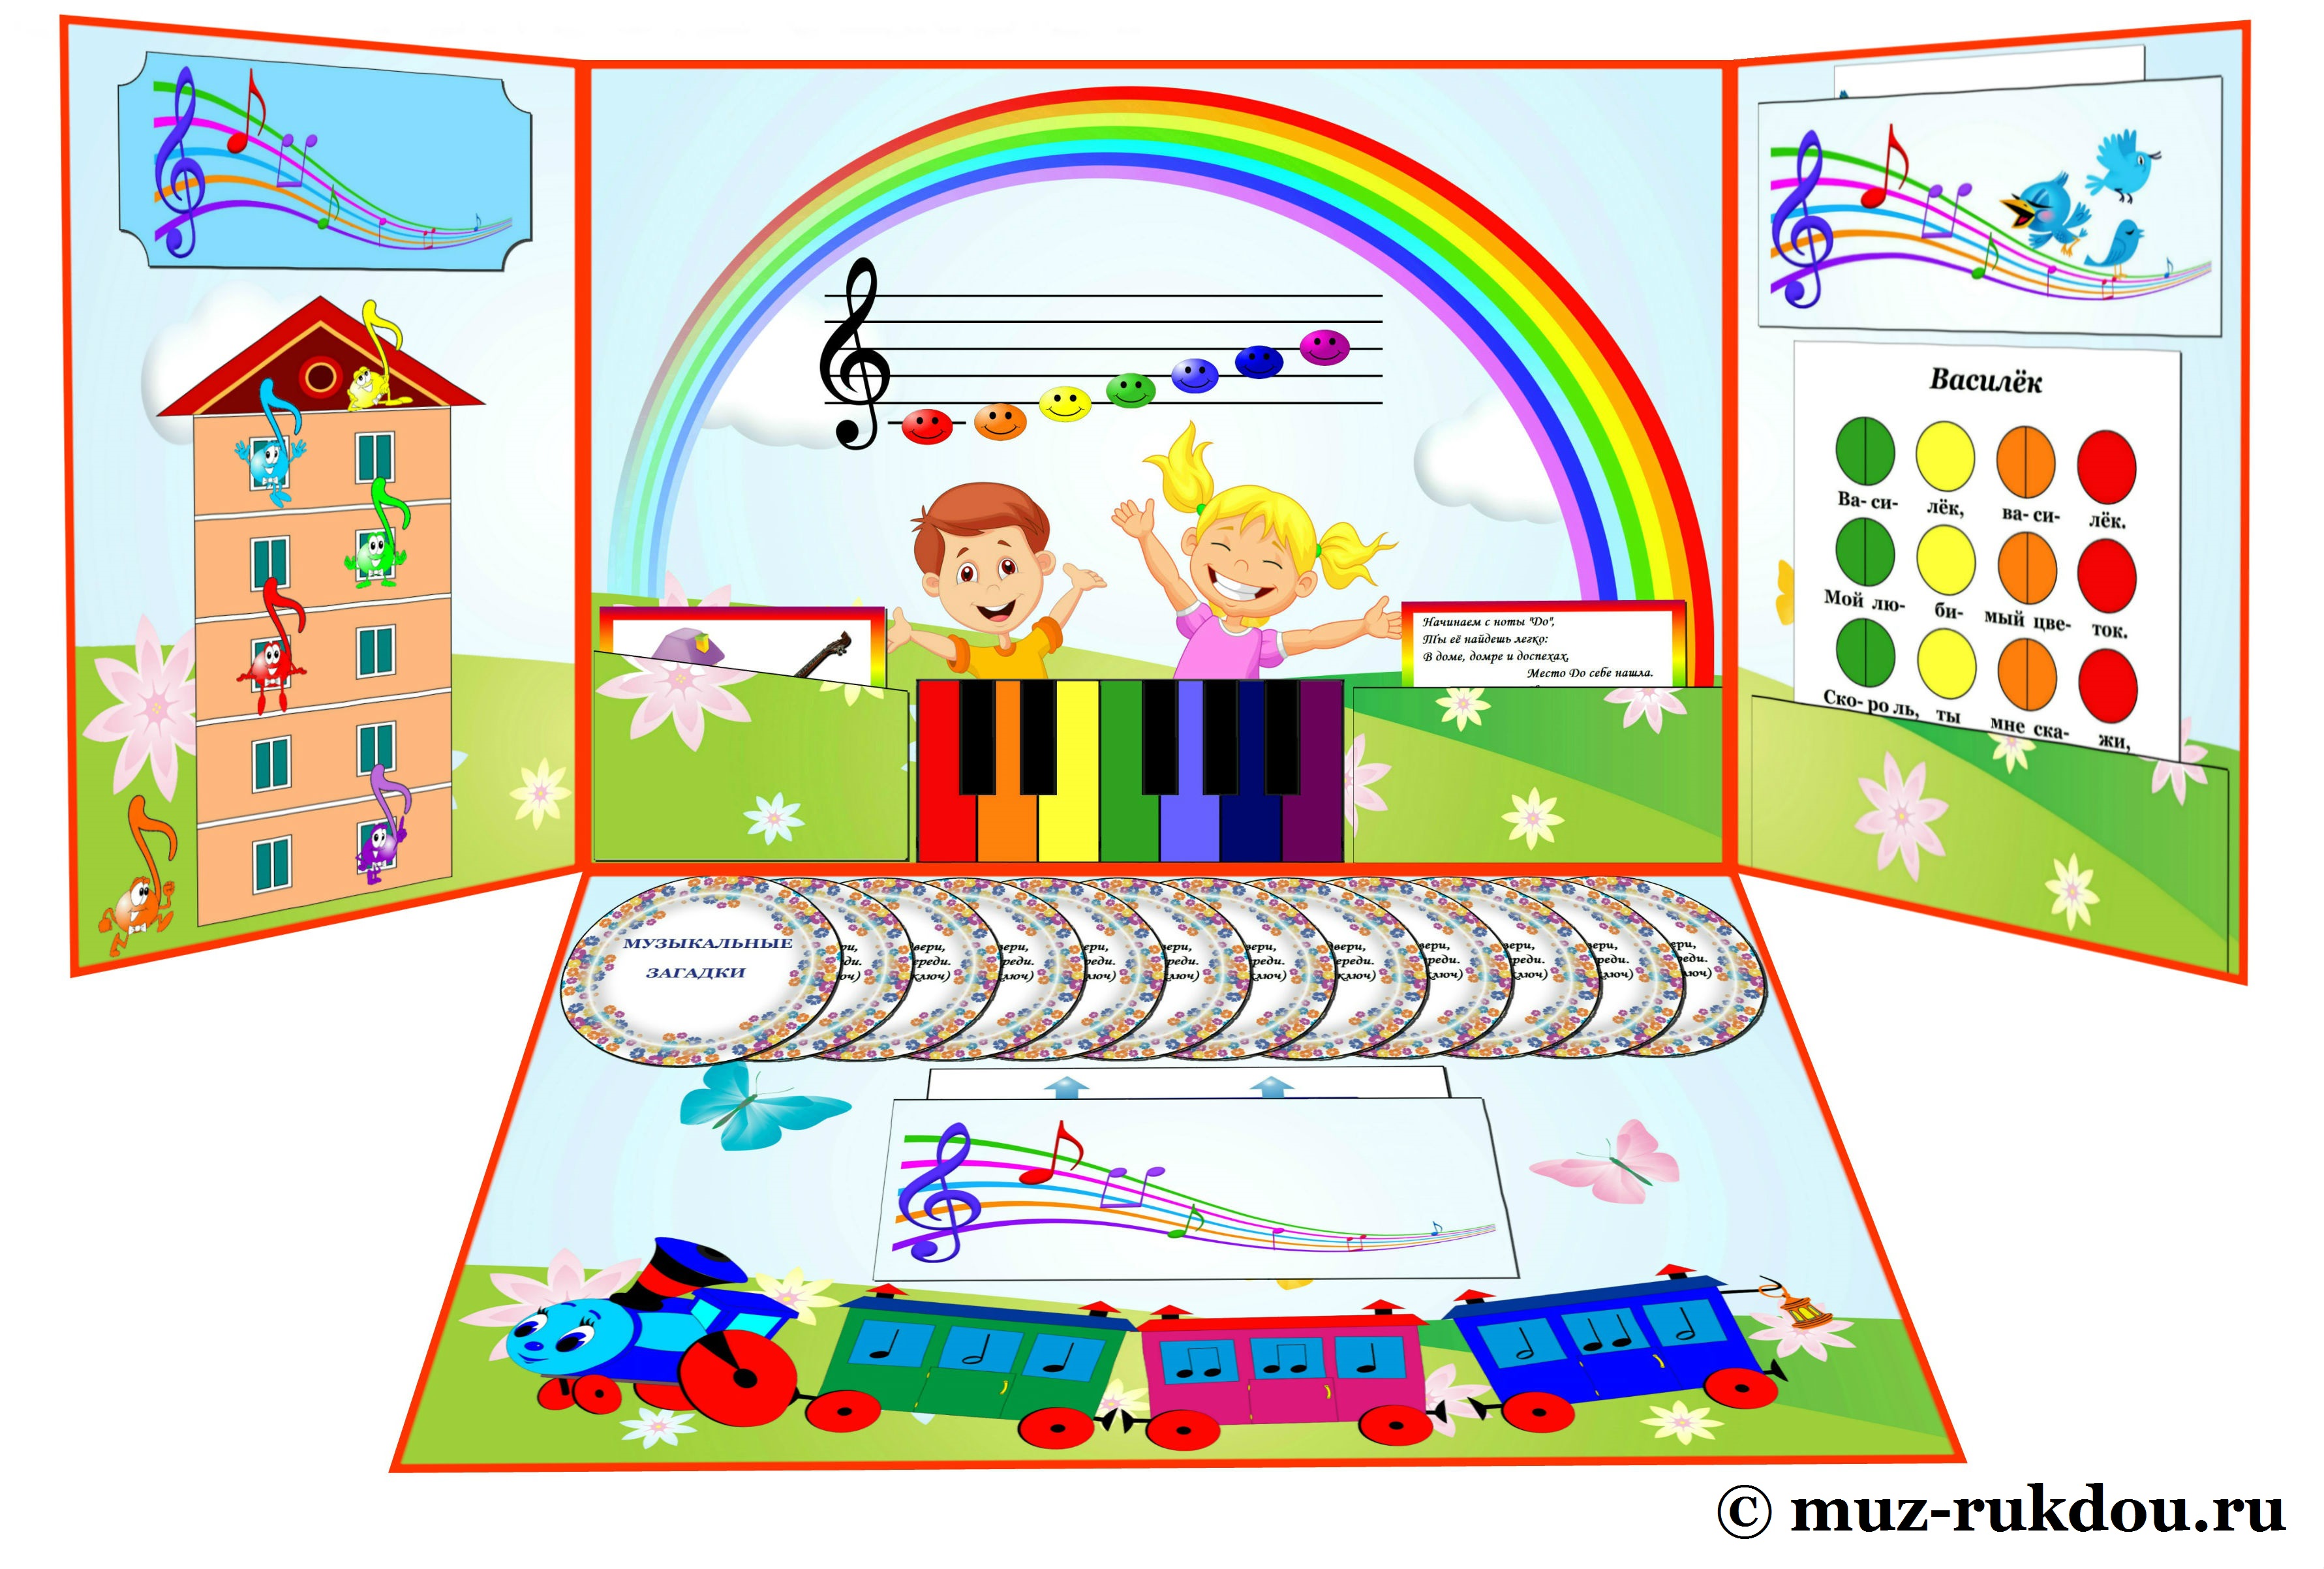 Музыкальные игры пособие. Пособия для дошкольников. Музыкальные пособия для детского сада. Развивающие пособия для детского сада. Обучающие пособия для дошкольников.